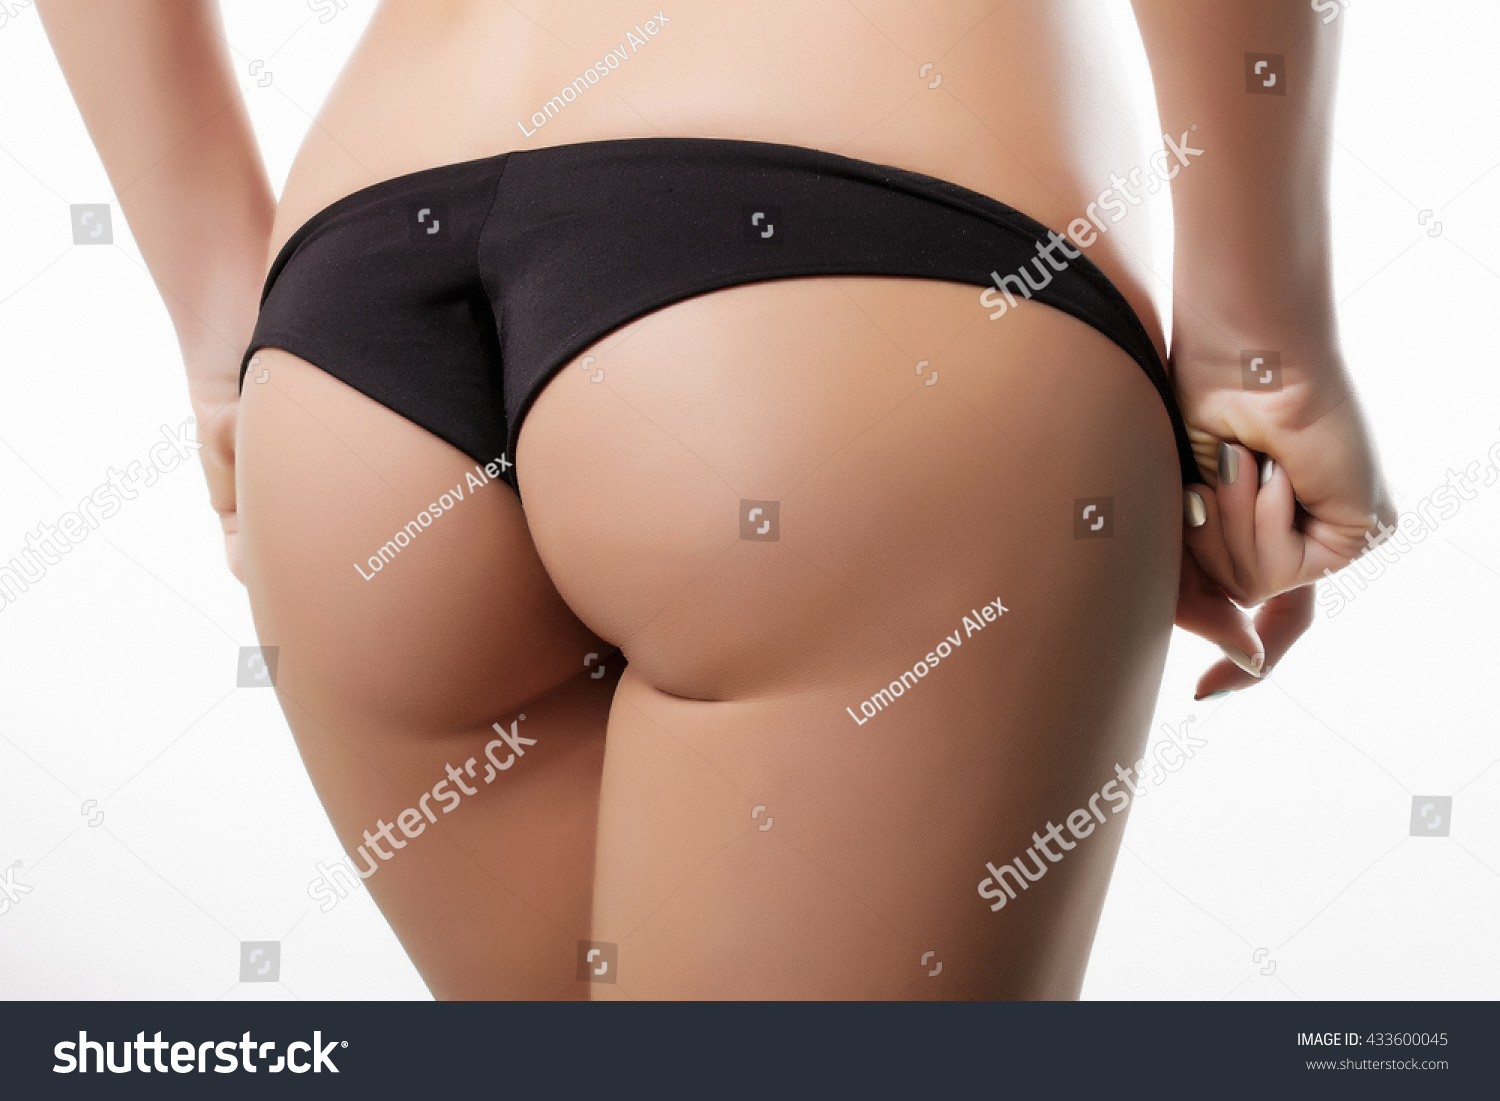 Ass In Black Panties Jpg